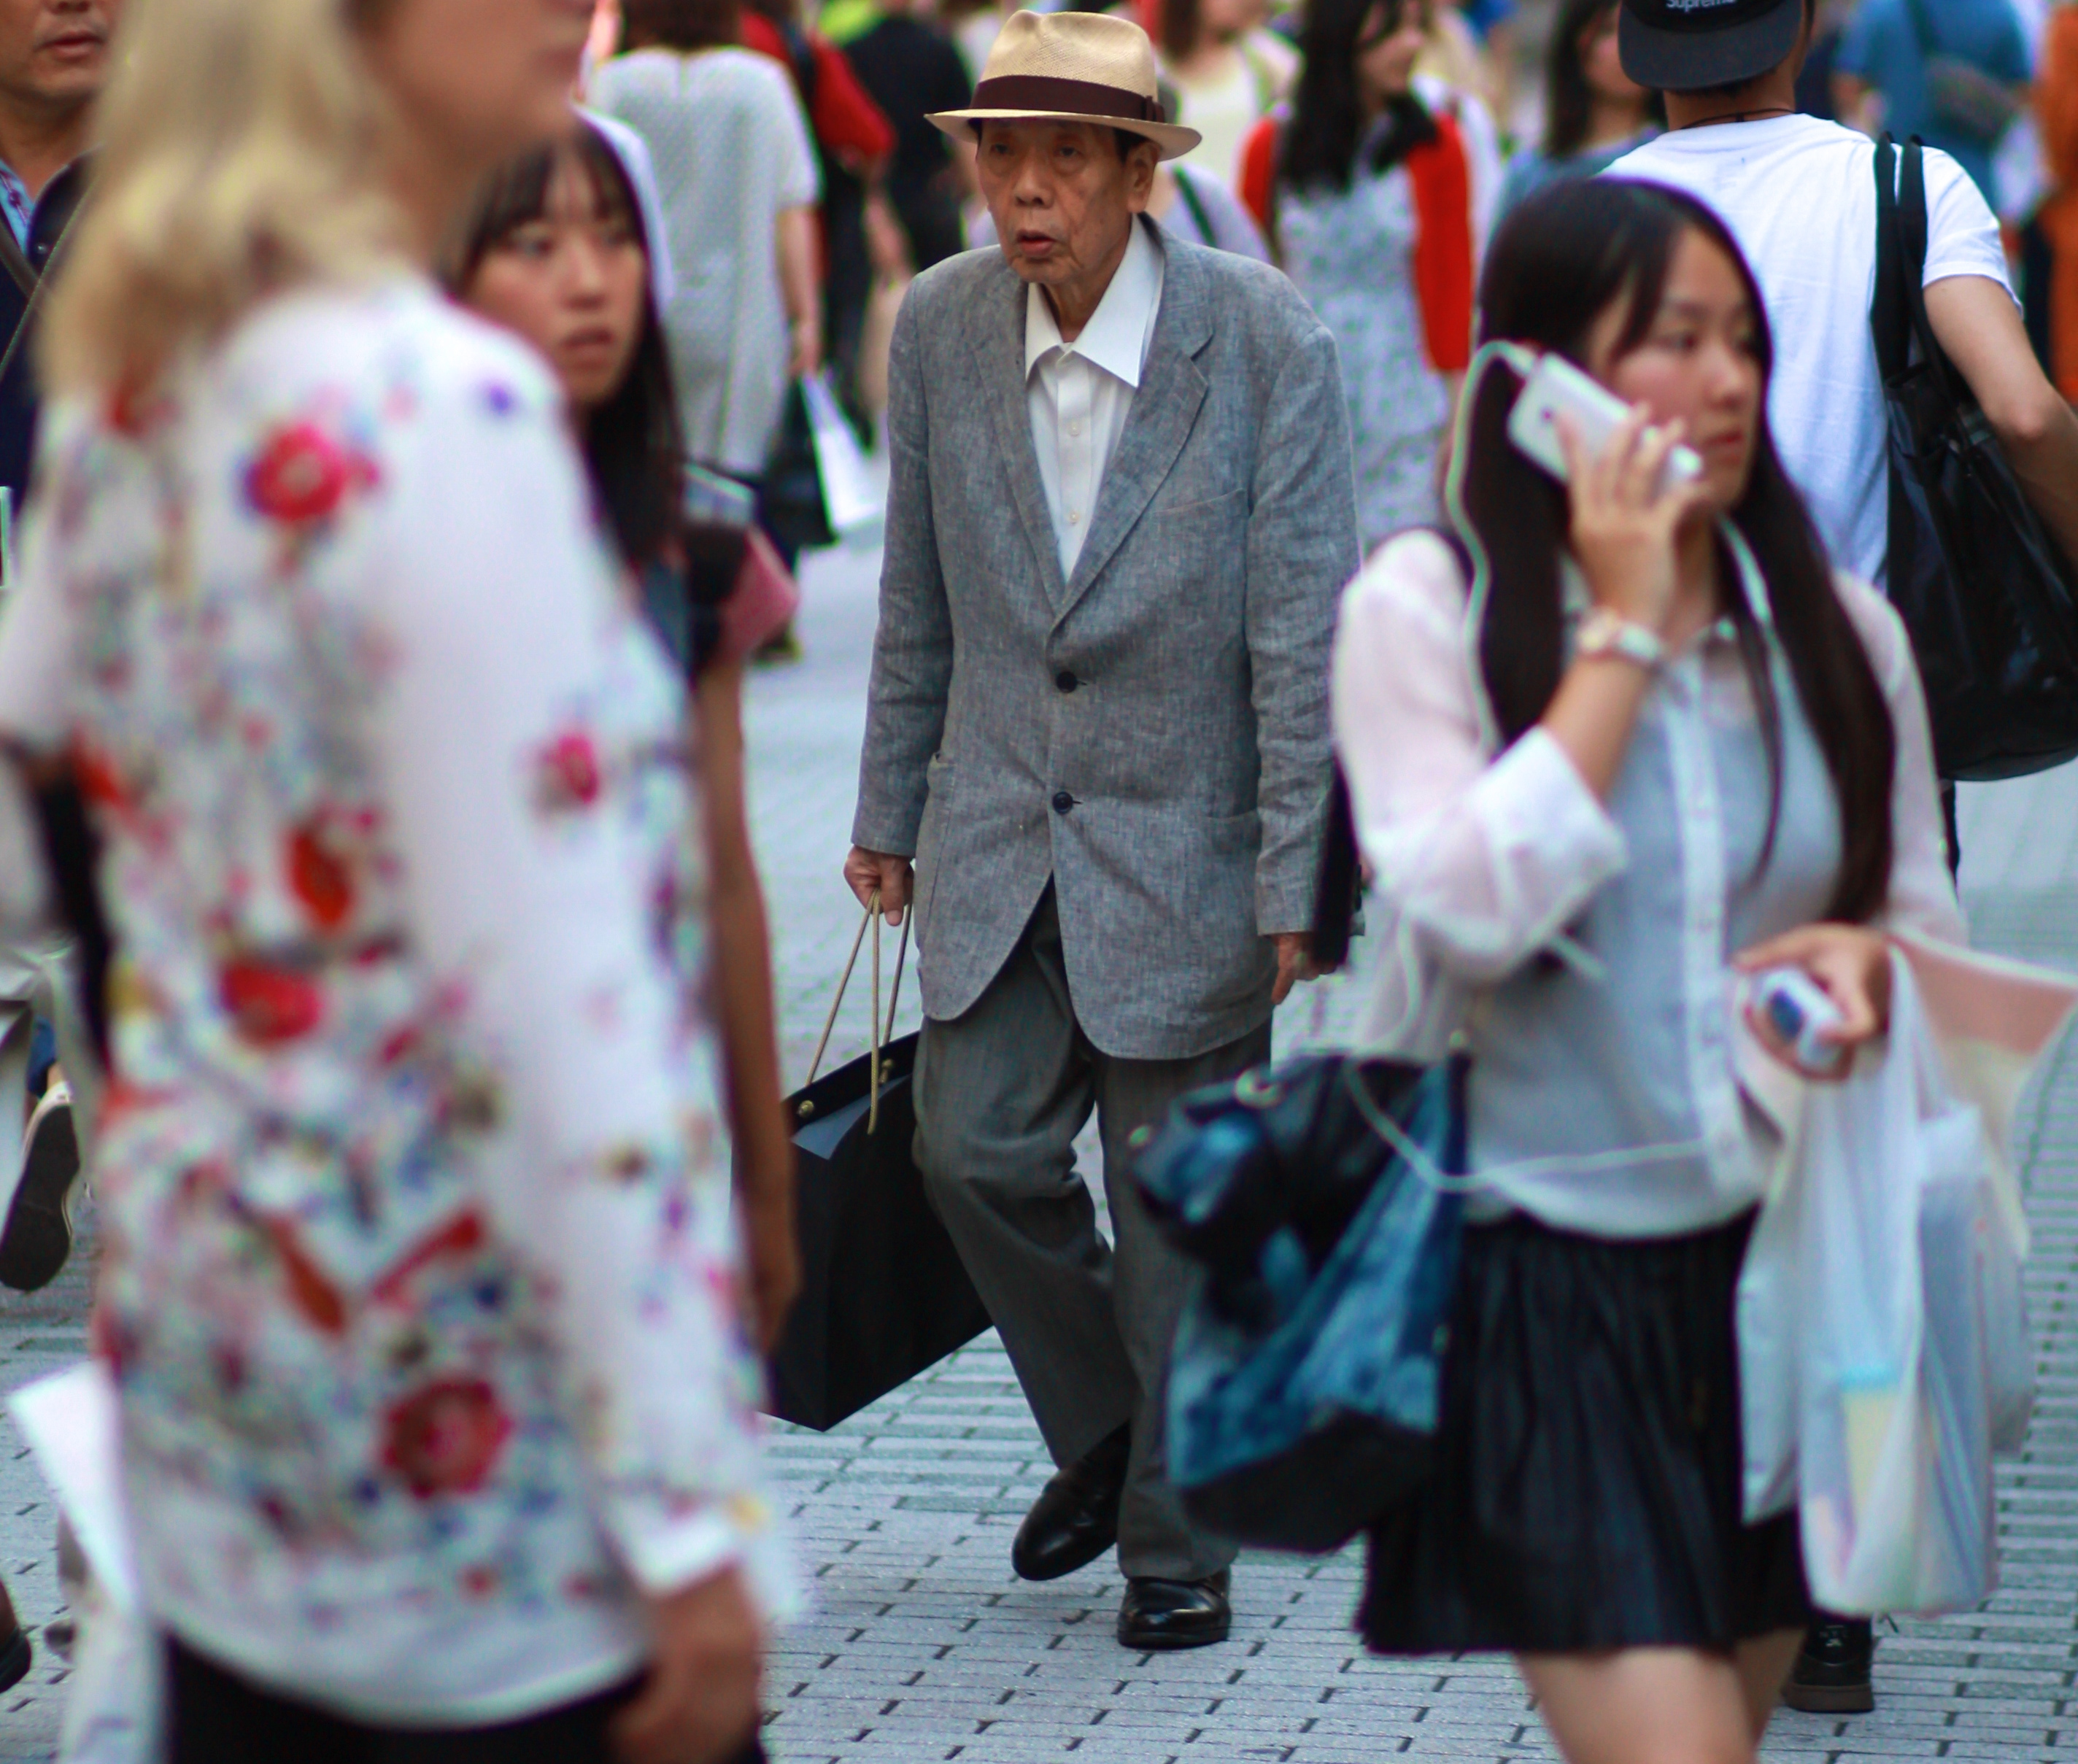 Japan Oldman